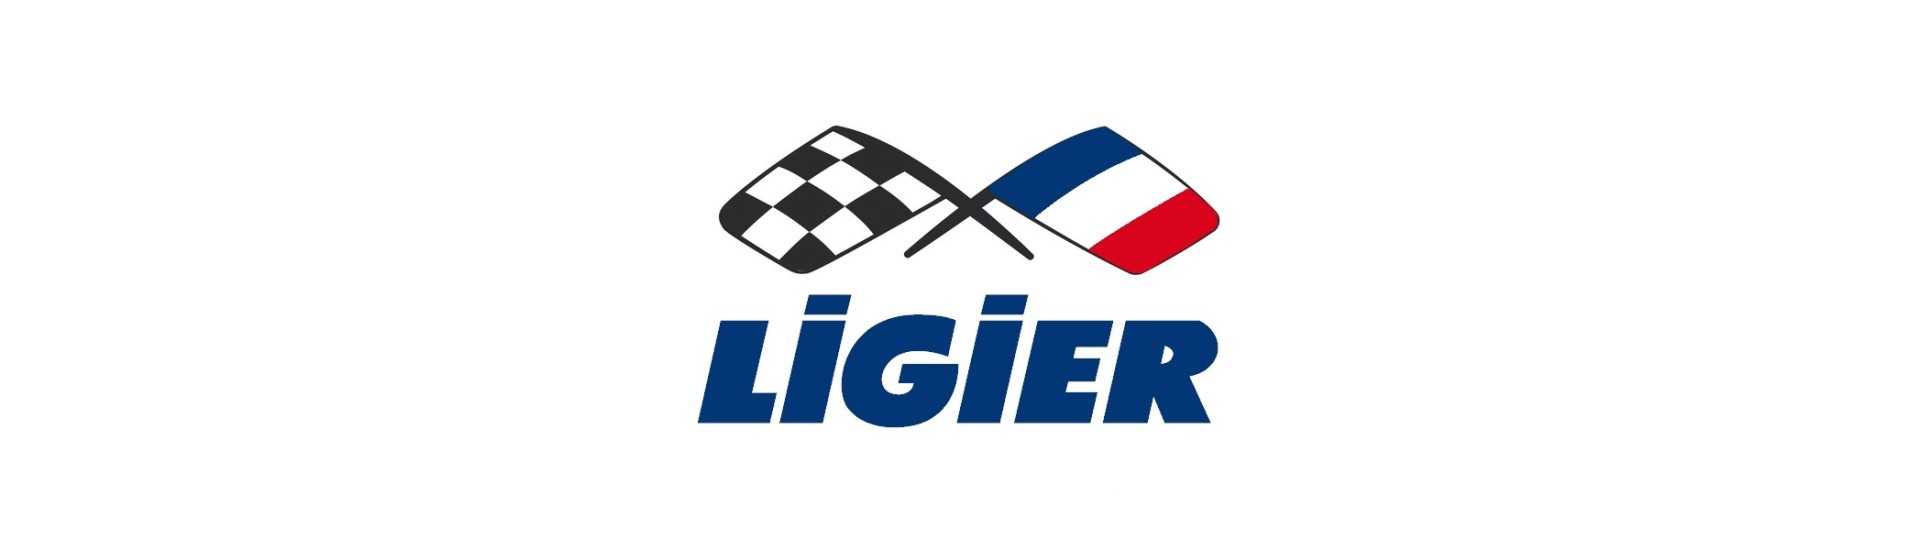 Garbage puerta cubierta al mejor precio del coche sin permiso Ligier